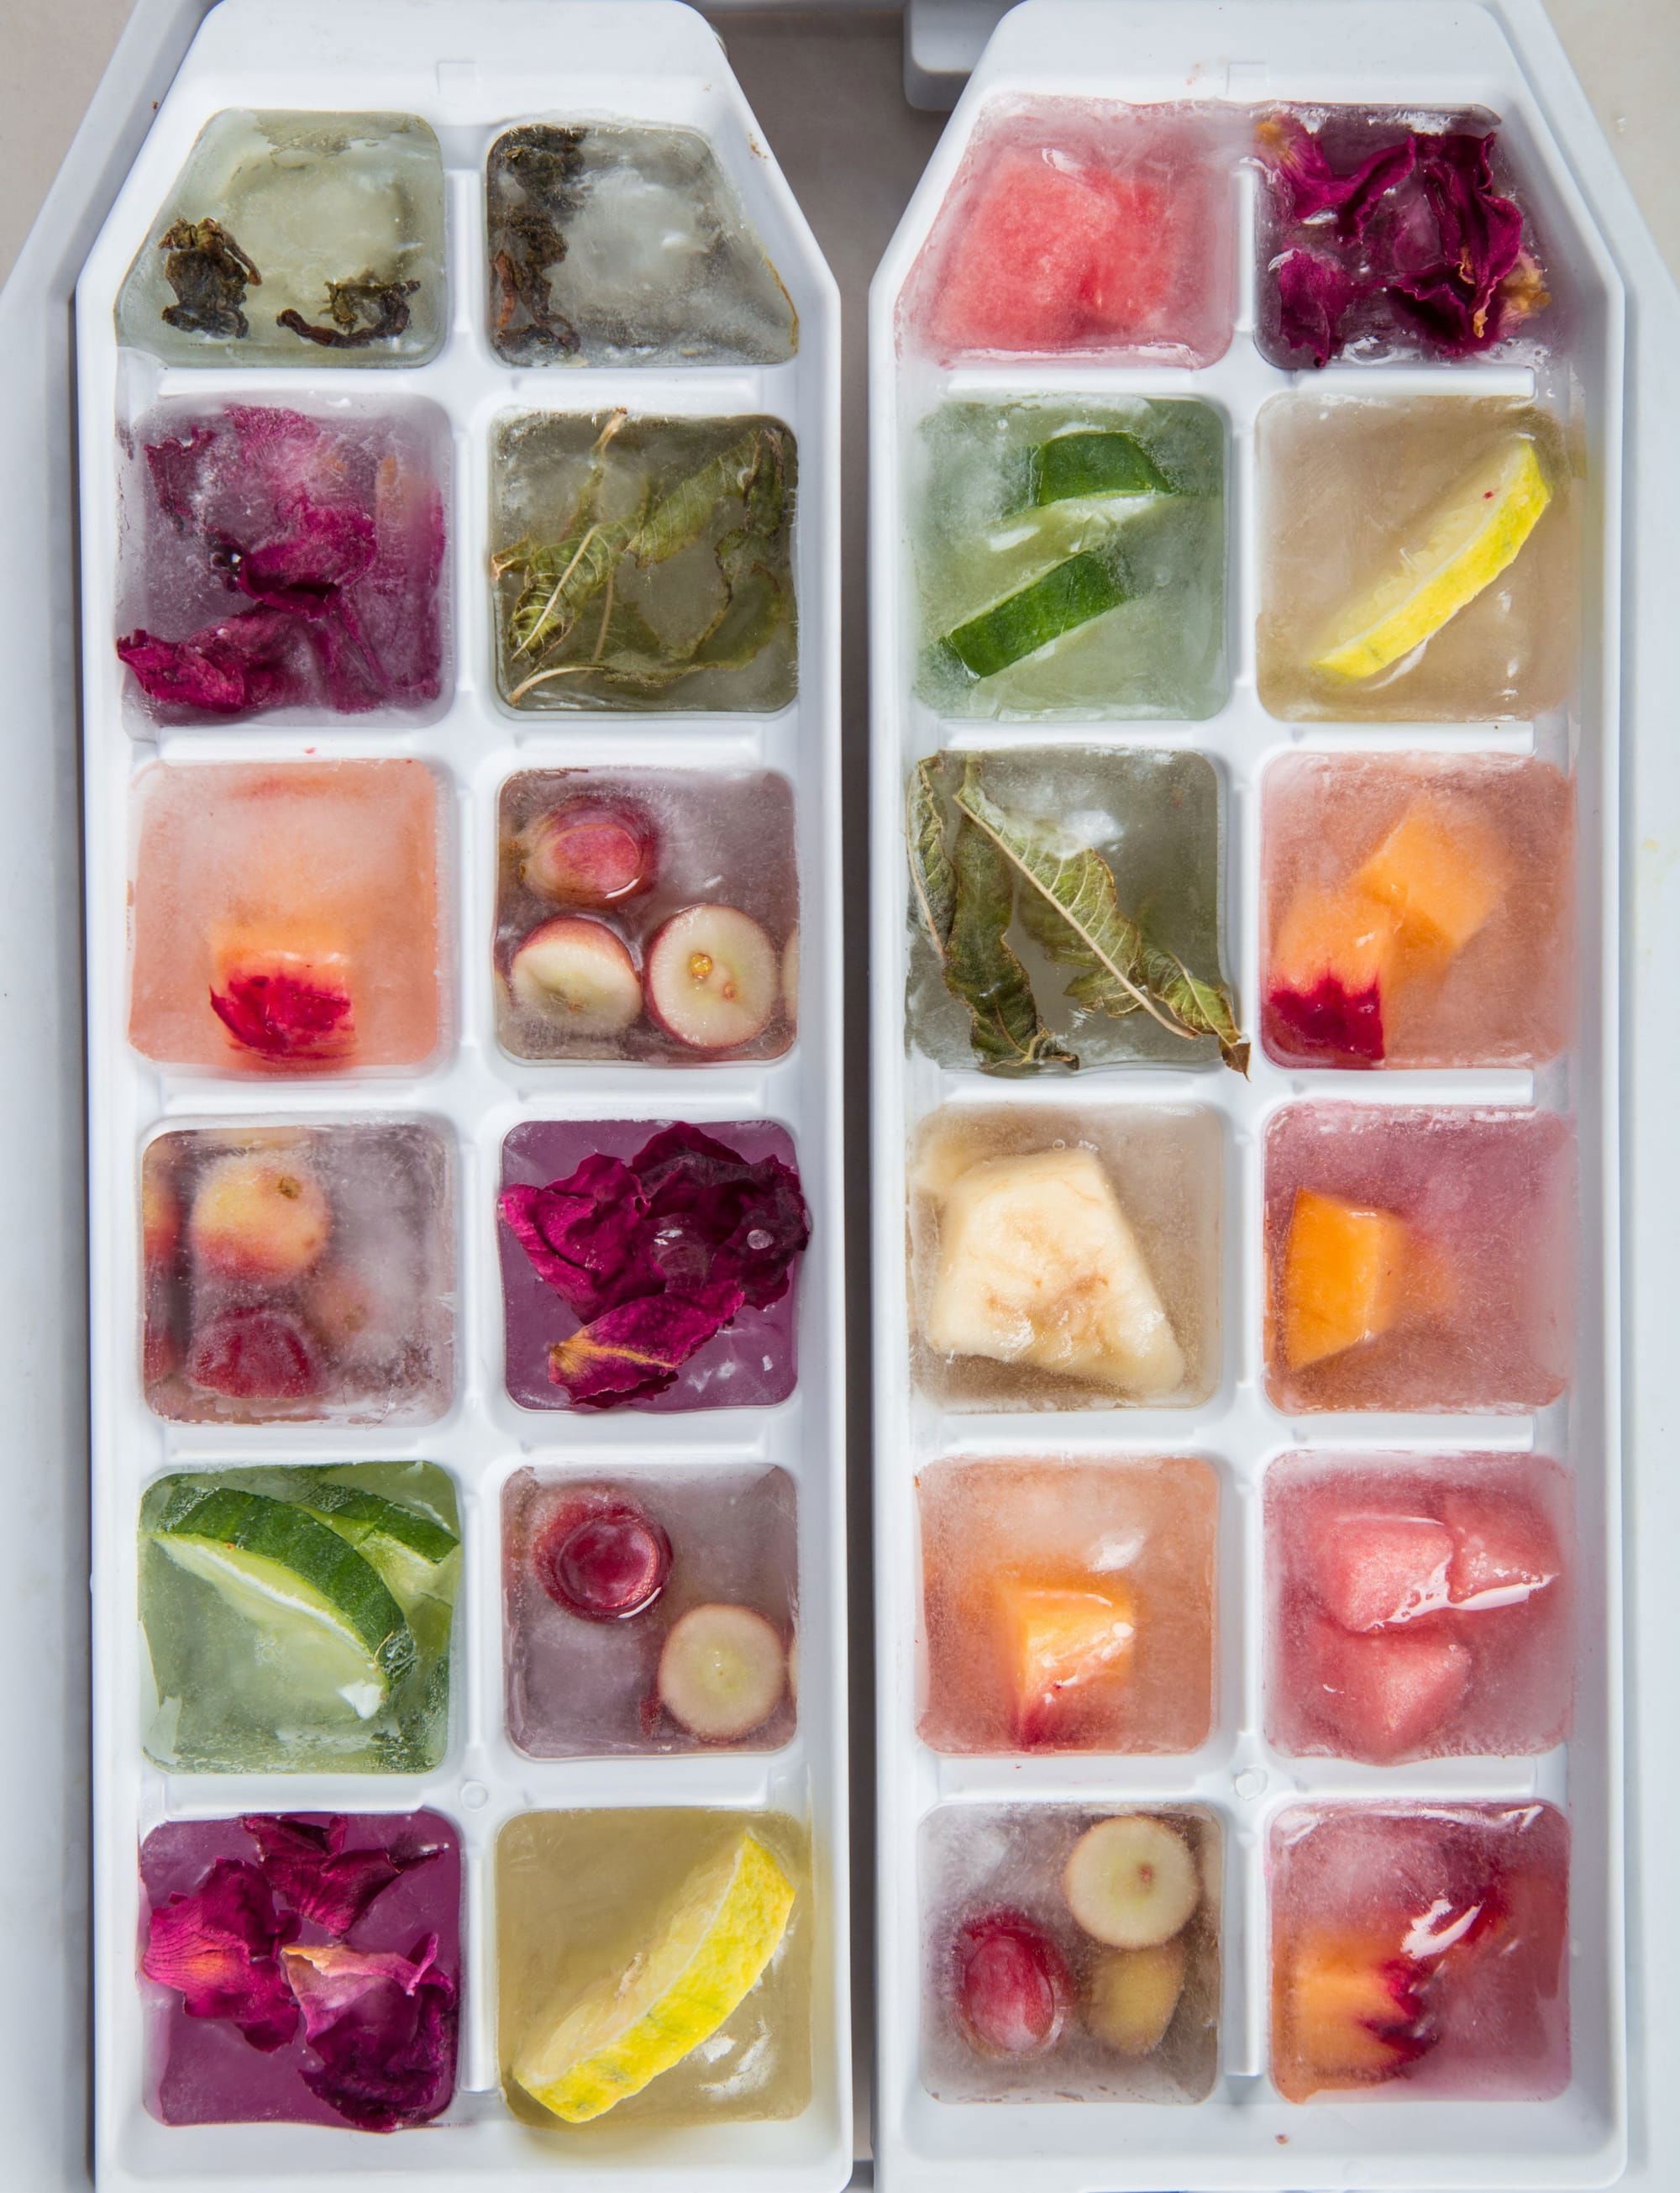 حفظ بعض الأطعمة فى الثلاجة قد يؤدي إلى أضرار صحية